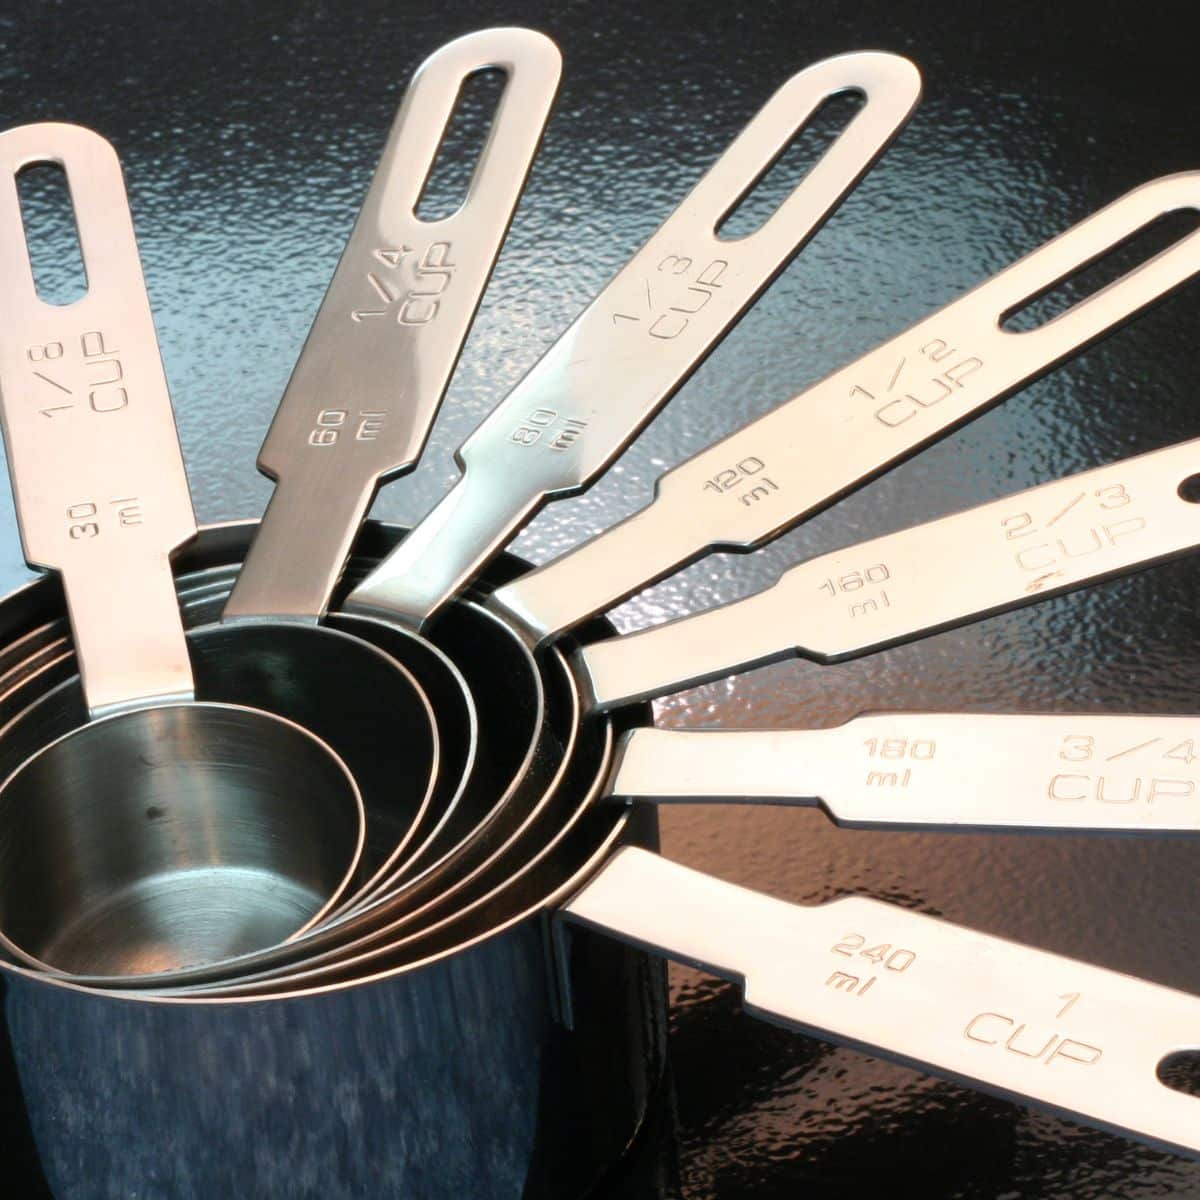 Imagen cuadrada para convertir tazas en cucharaditas, que muestra tazas medidoras.